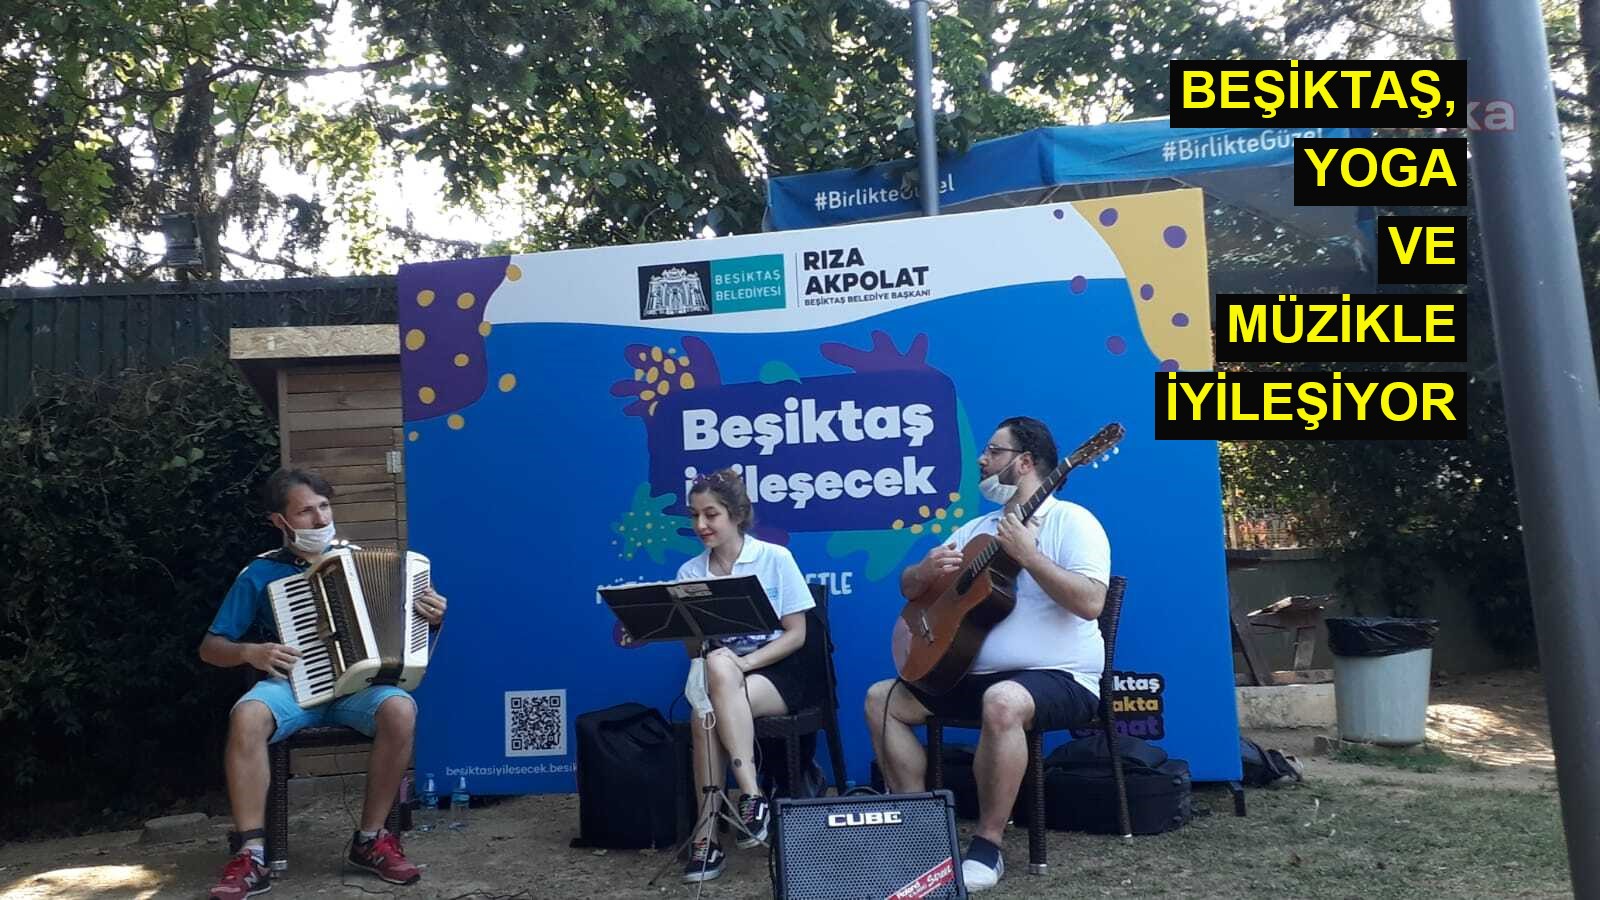 Beşiktaş, yoga ve müzikle iyileşiyor